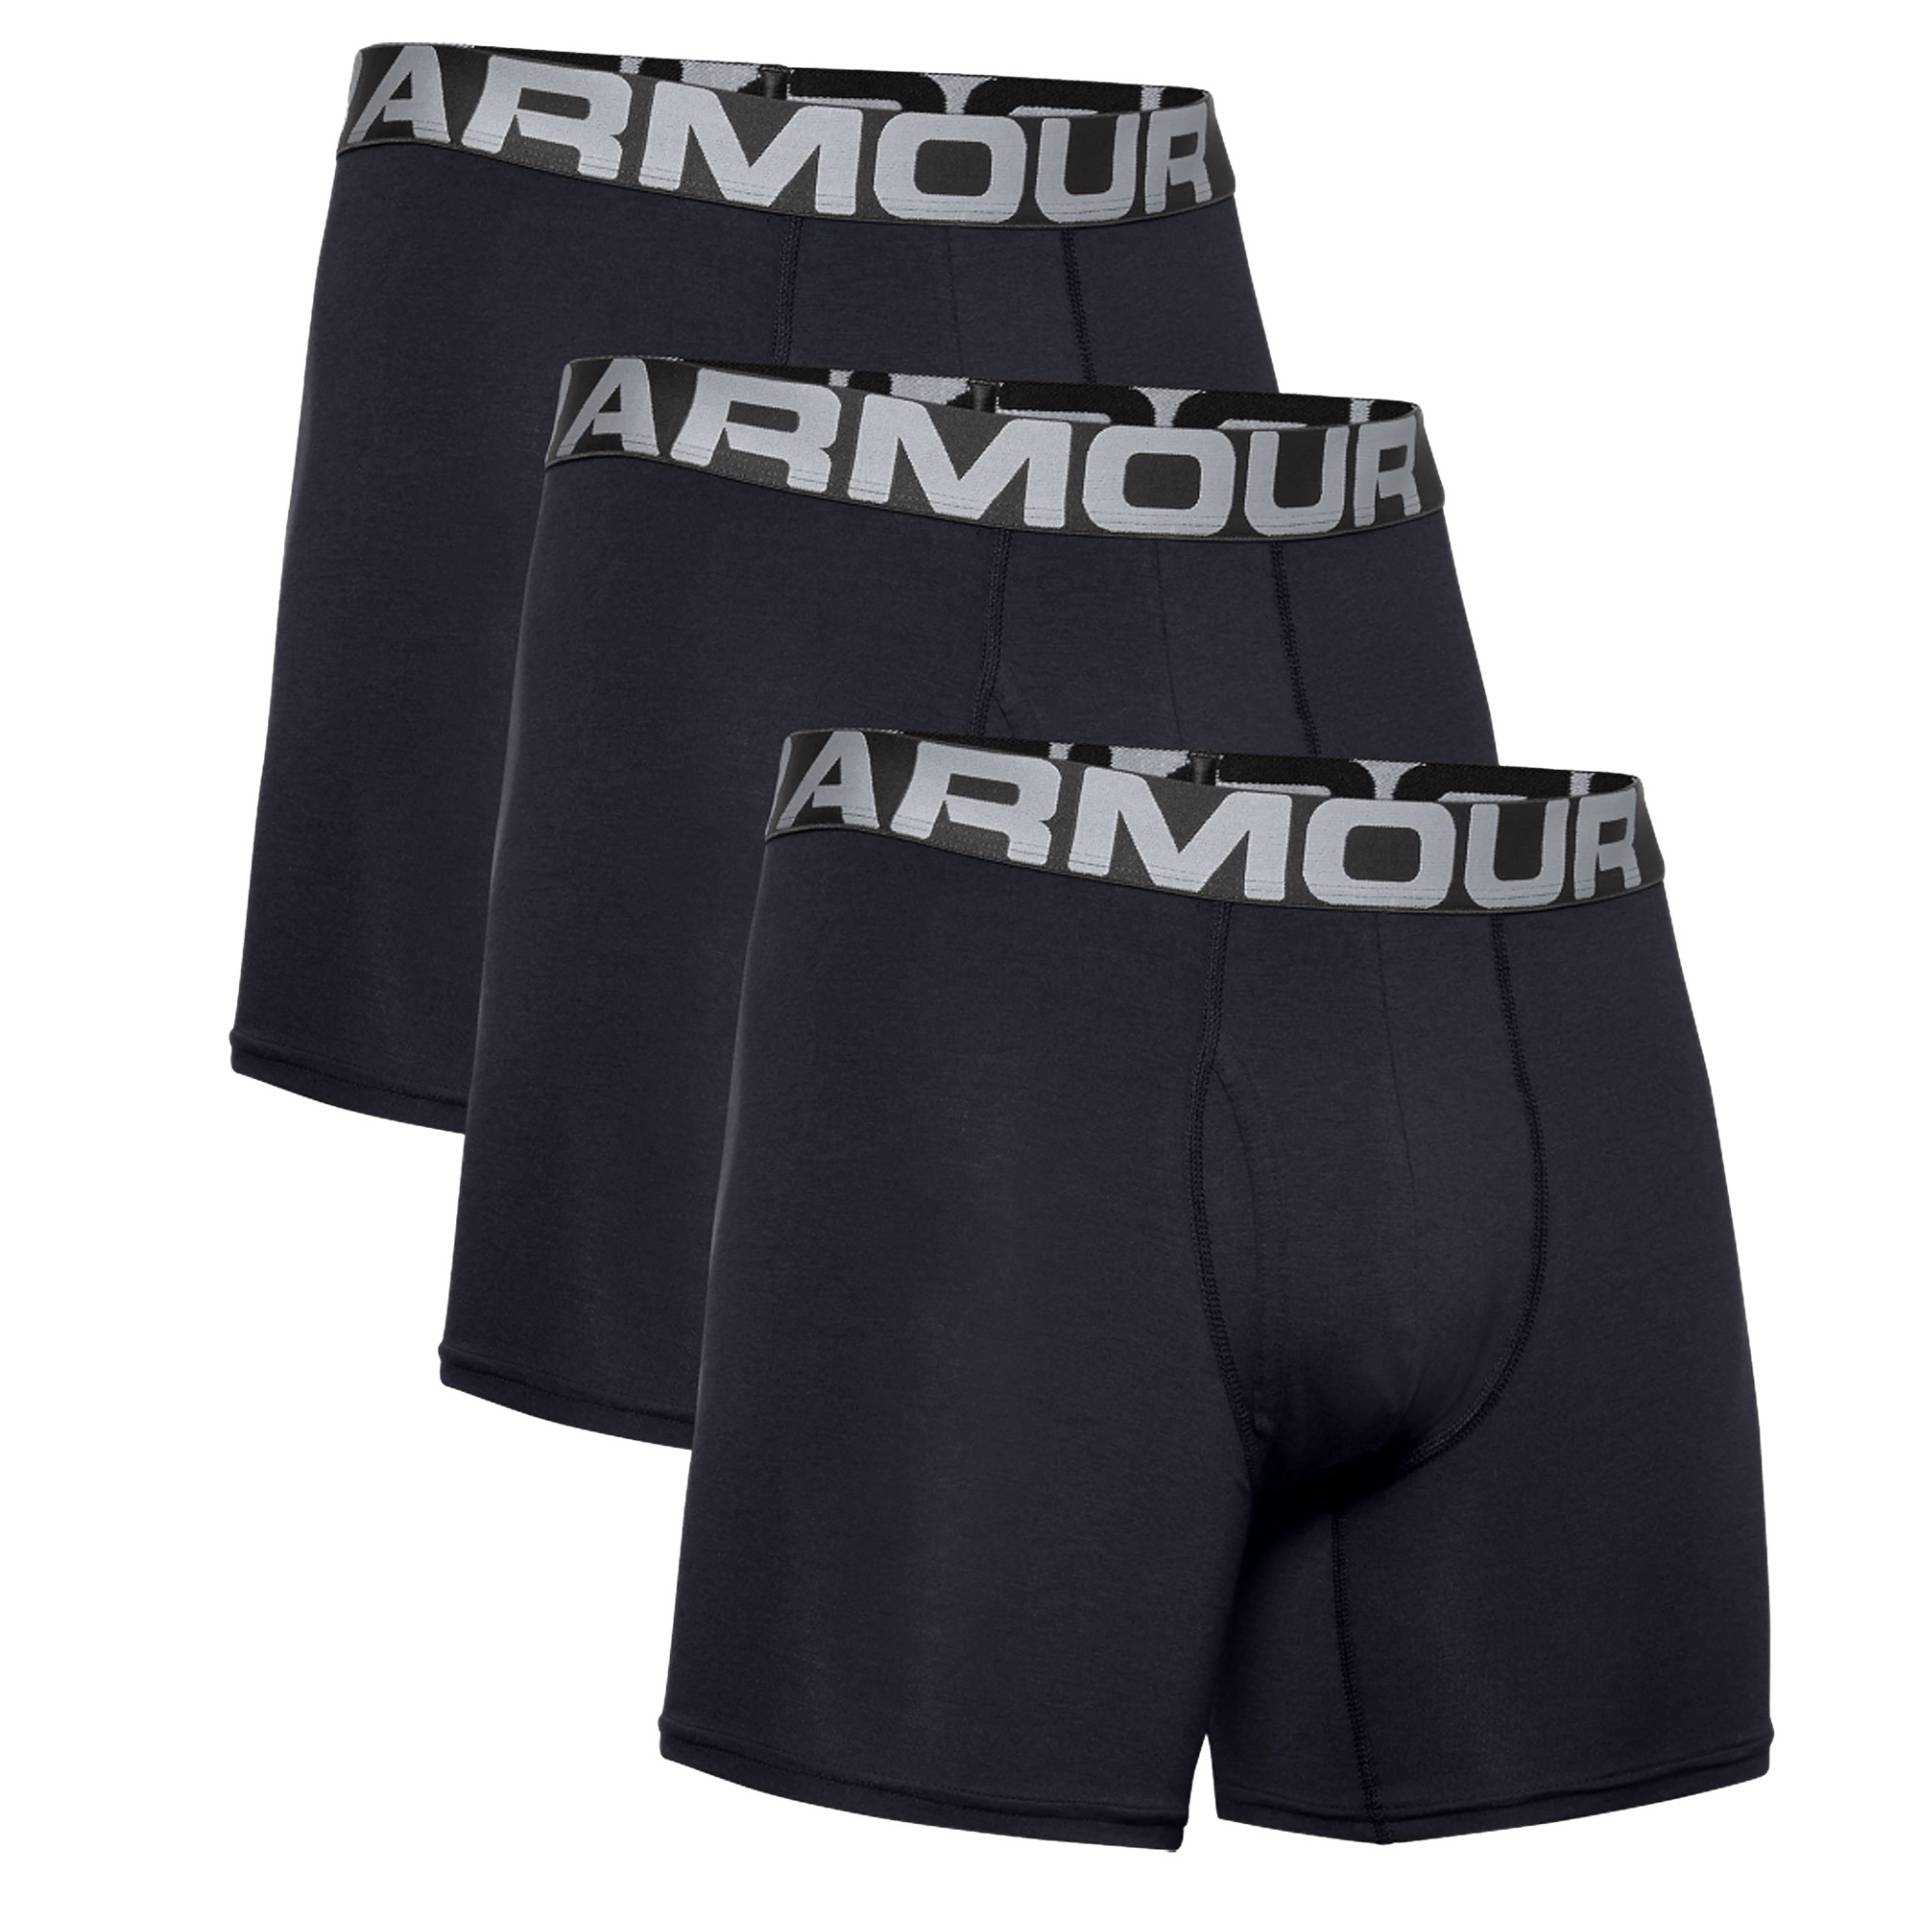 Under Armour Boxerjock 6 Zoll Boxershort 3 er Pack Herren Unterhose Shorts von Under Armour